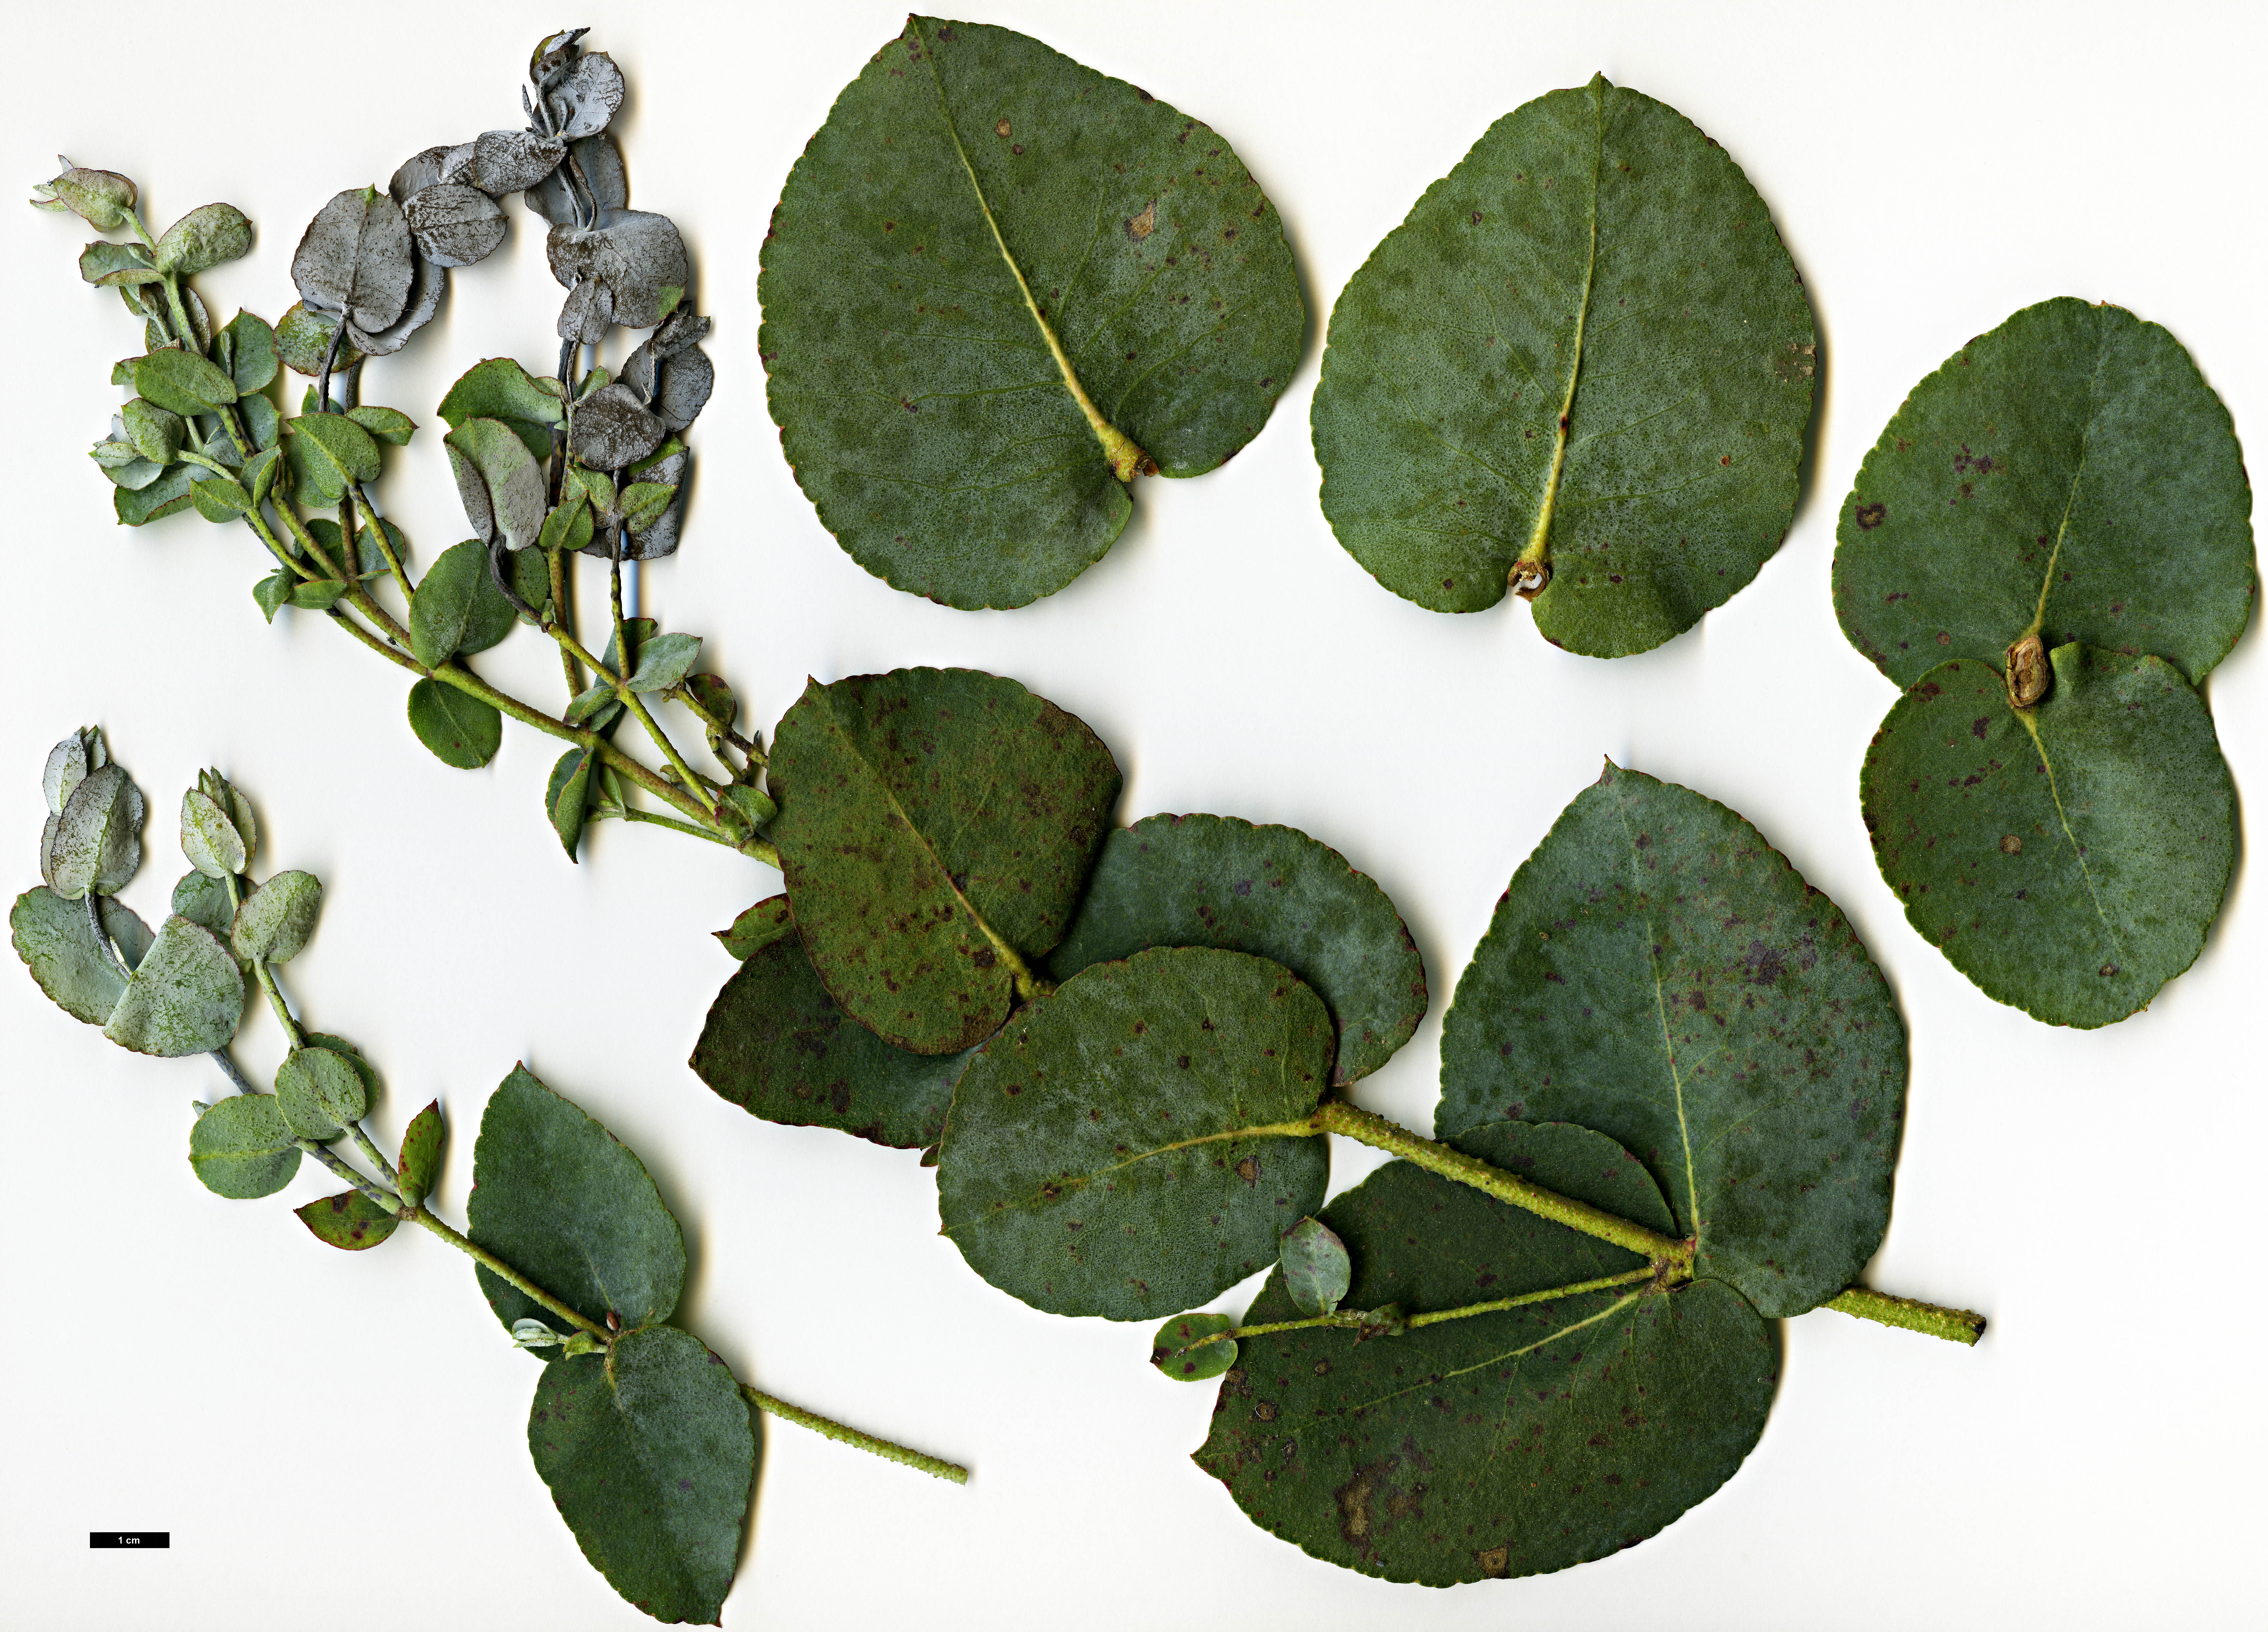 High resolution image: Family: Myrtaceae - Genus: Eucalyptus - Taxon: cordata - SpeciesSub: subsp. cordata